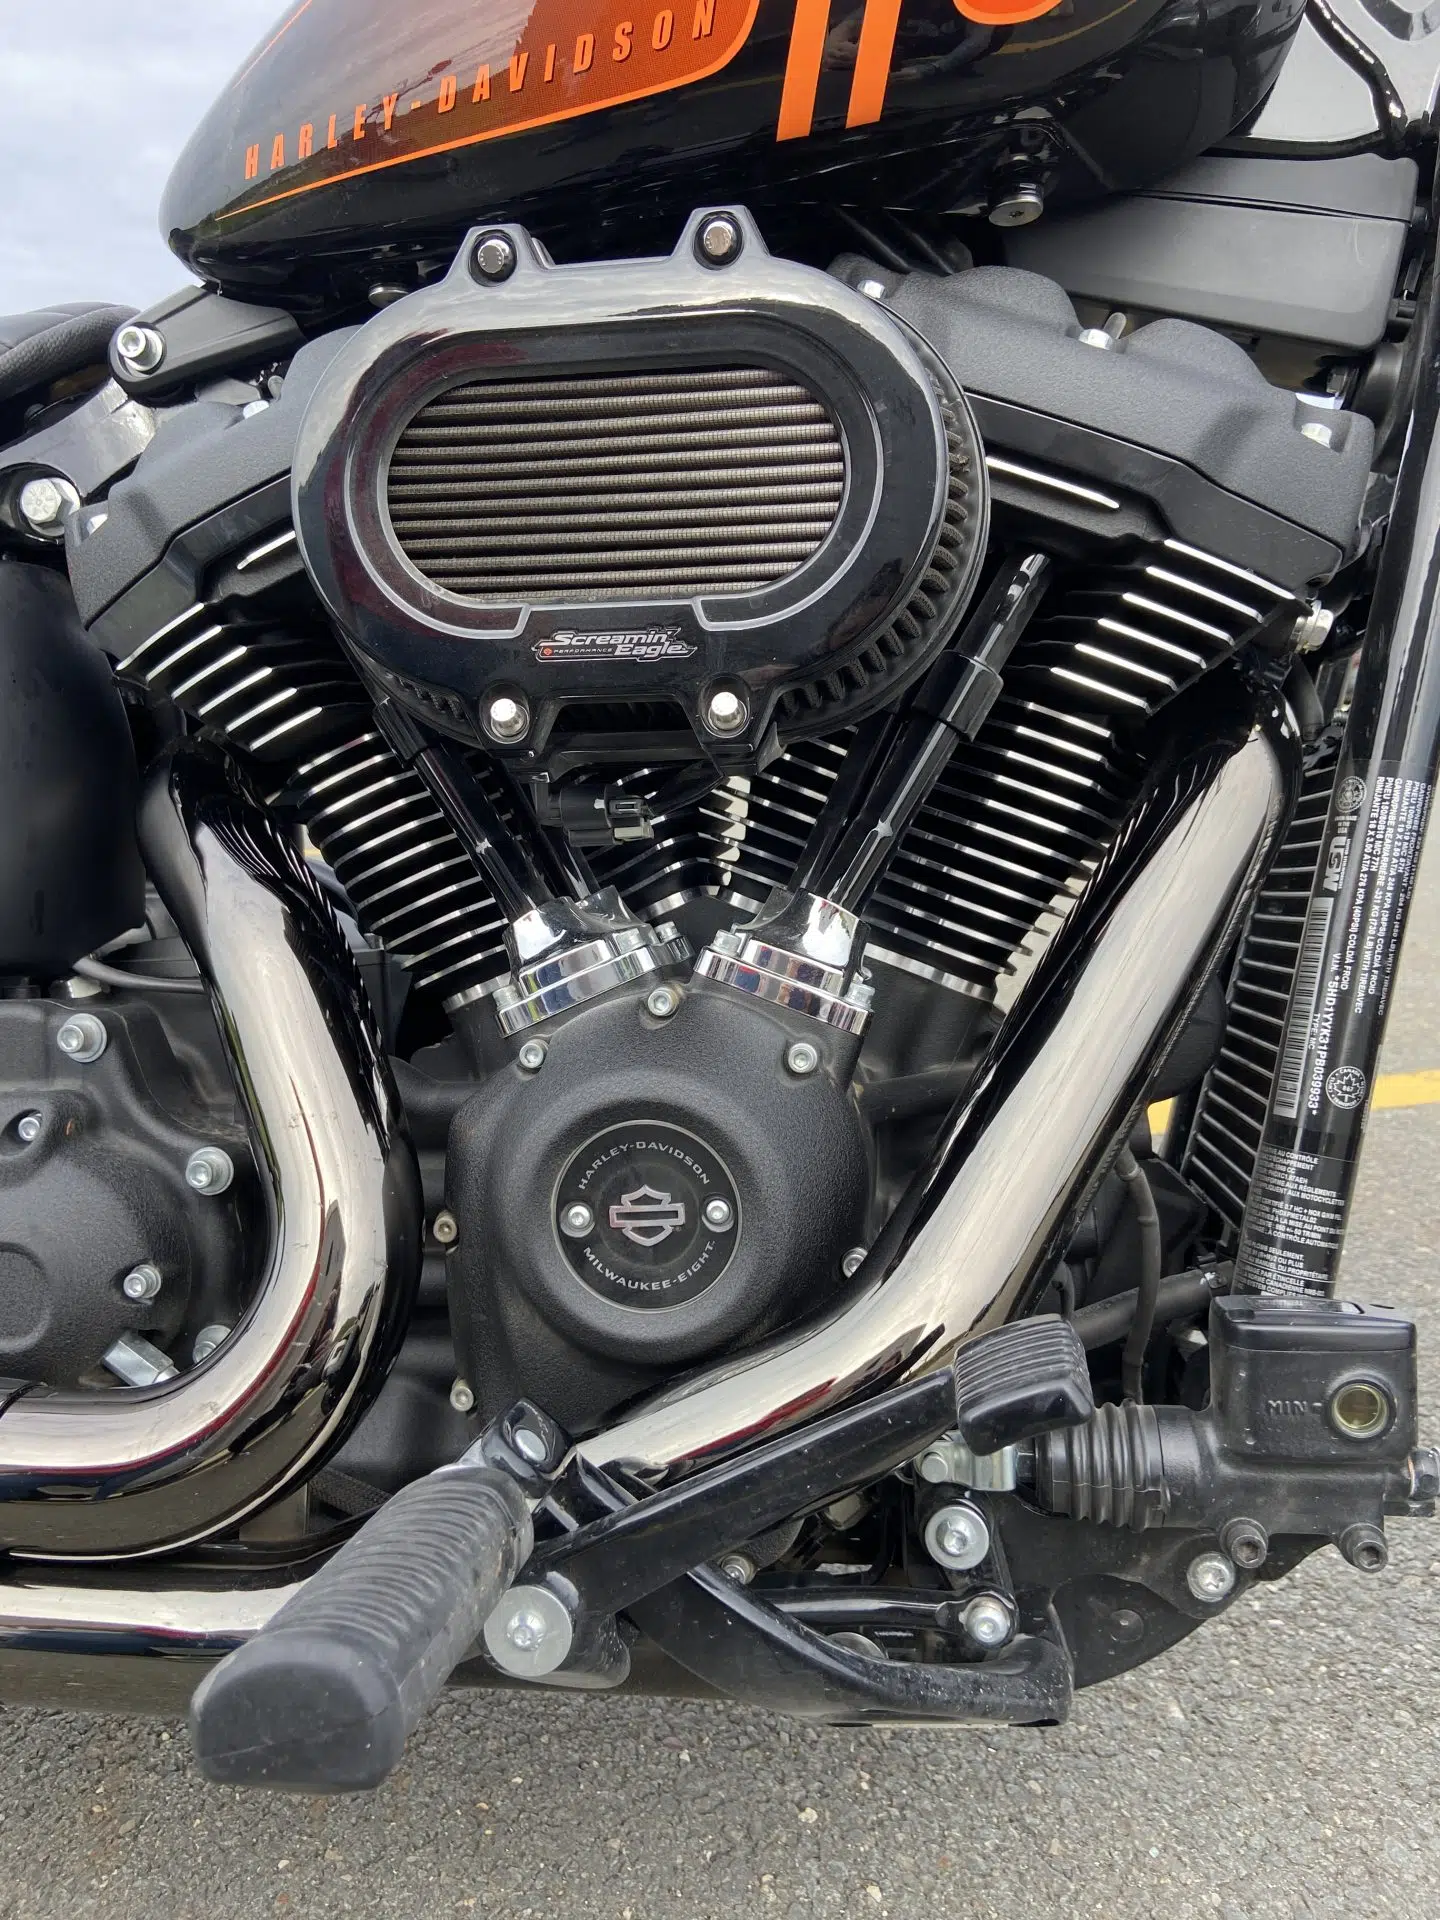 Le moteur Milwaukee-Eight 114 donne toute sa puissance à la moto